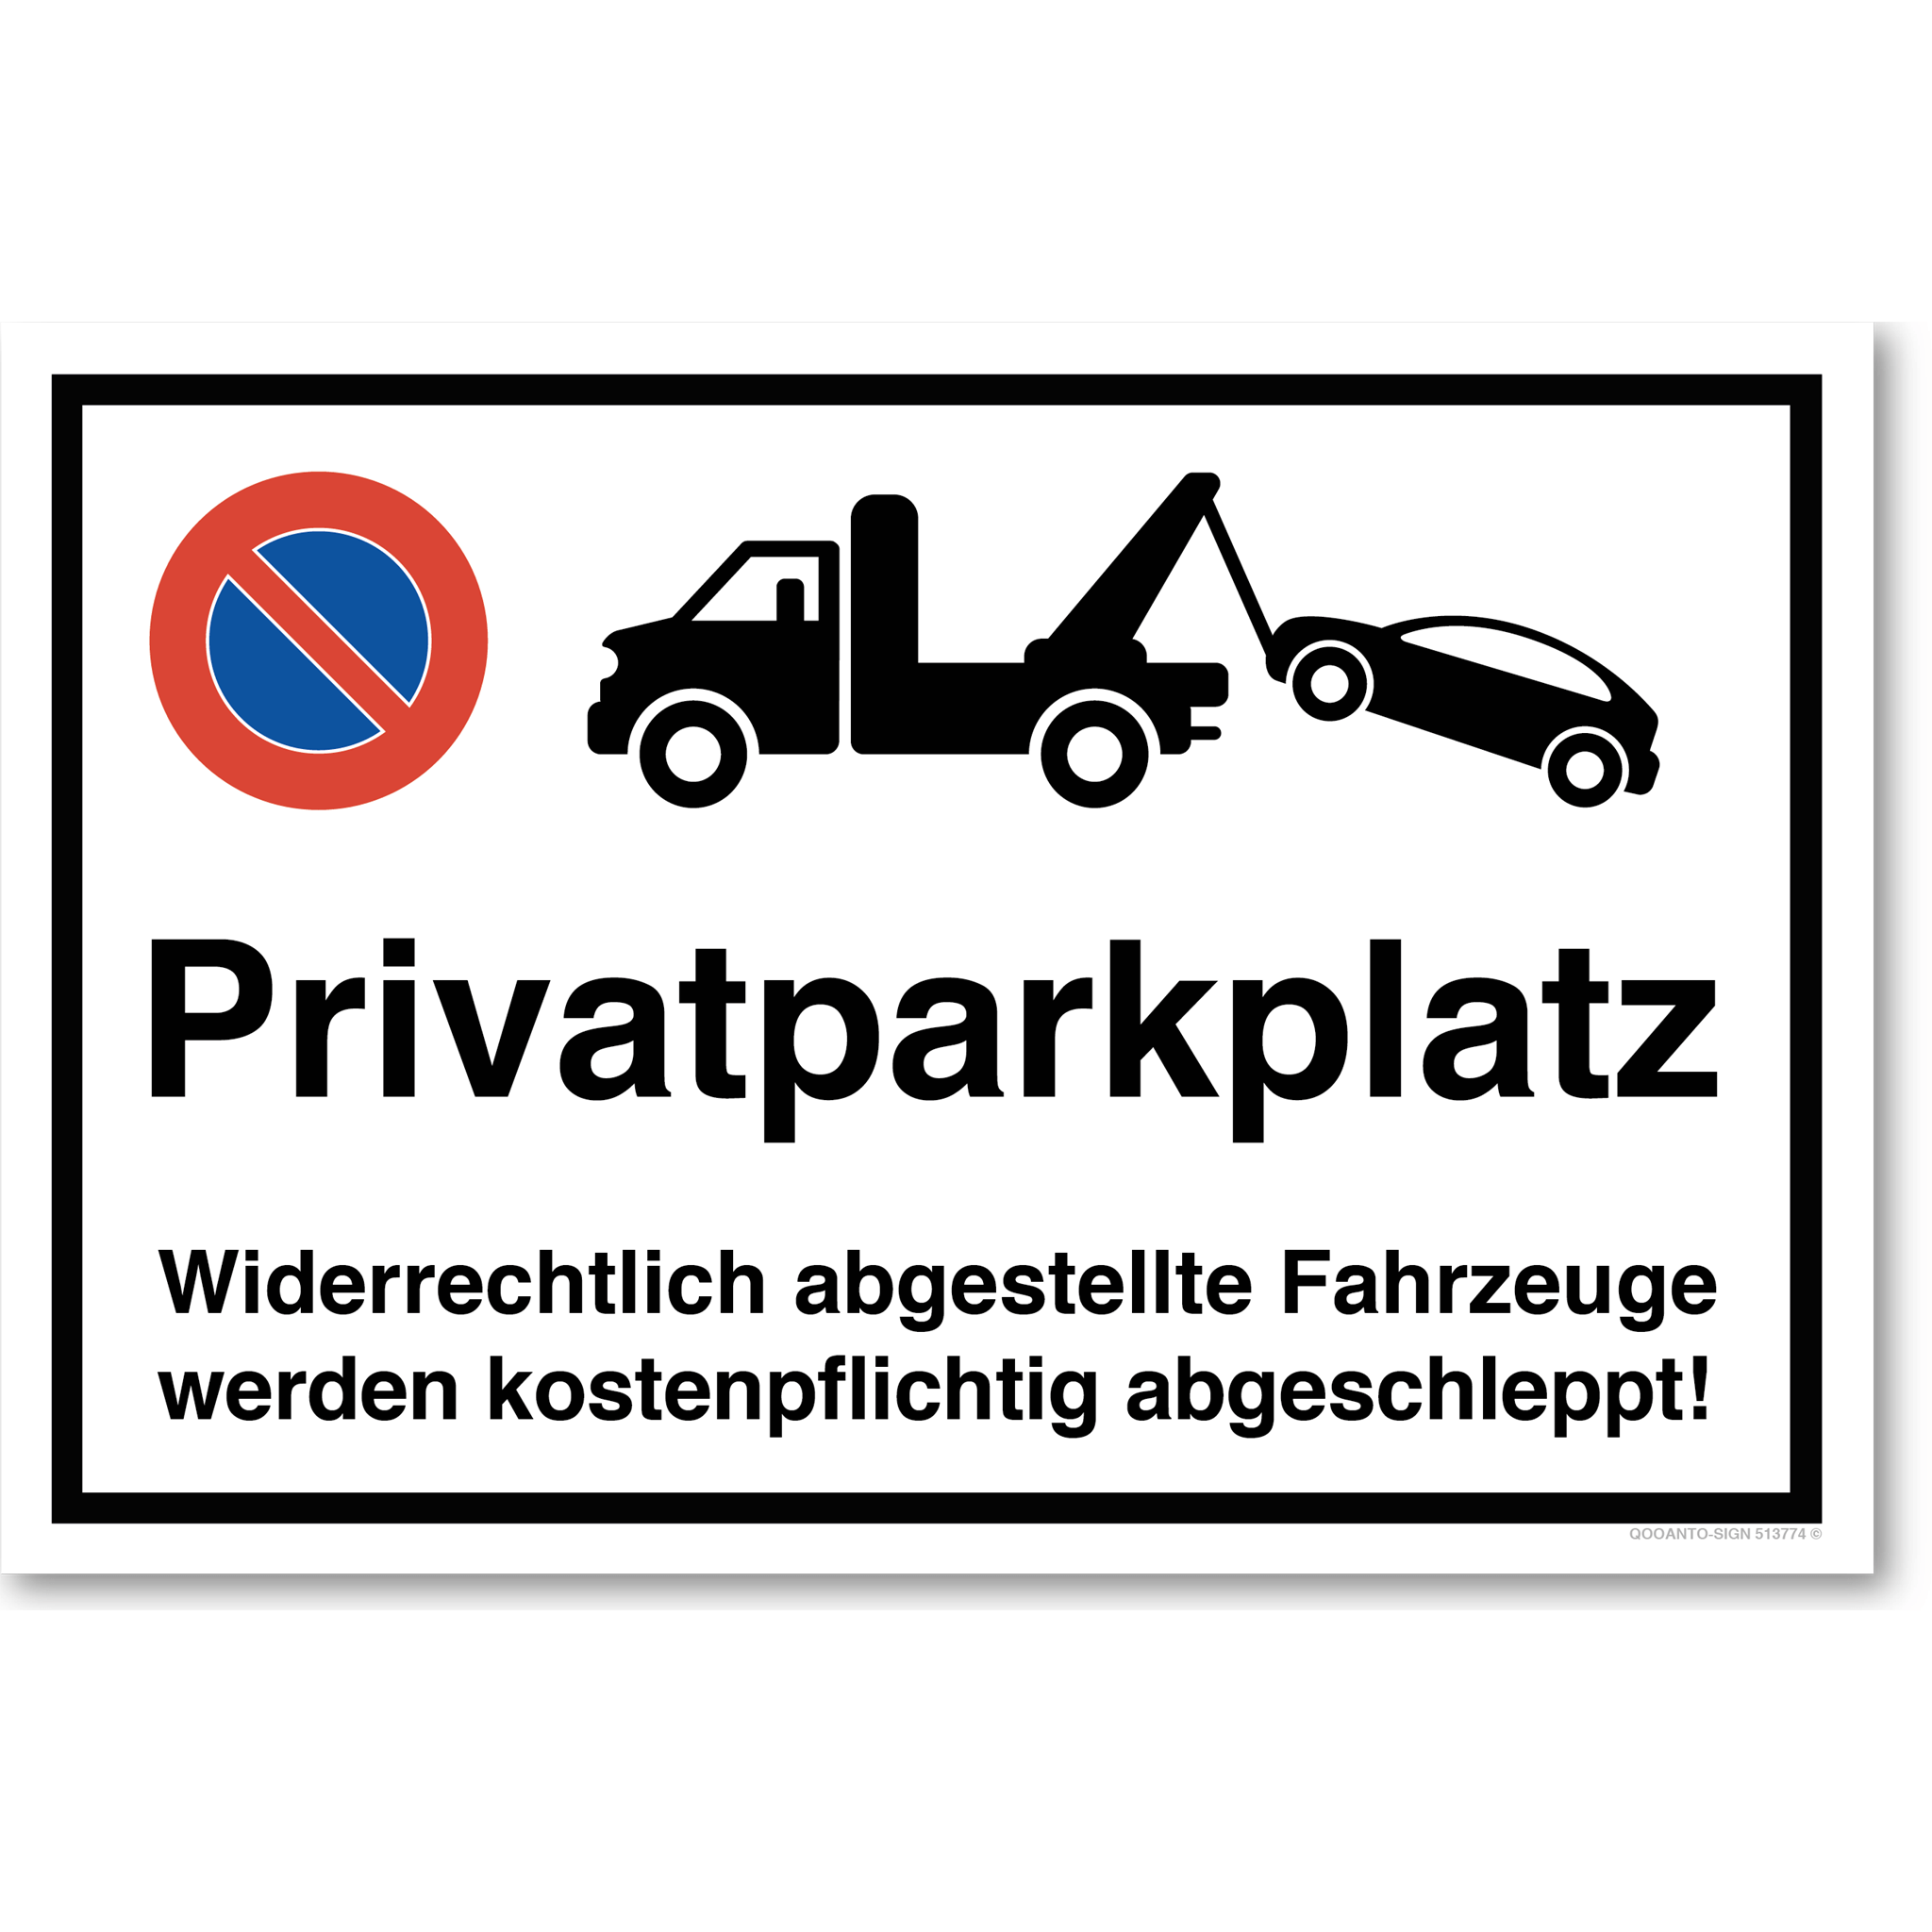 Privatparkplatz - Widerrechtlich abgestellte Fahrzeuge werden kostenpflichtig abgeschleppt - Parkverbotsschild querformat